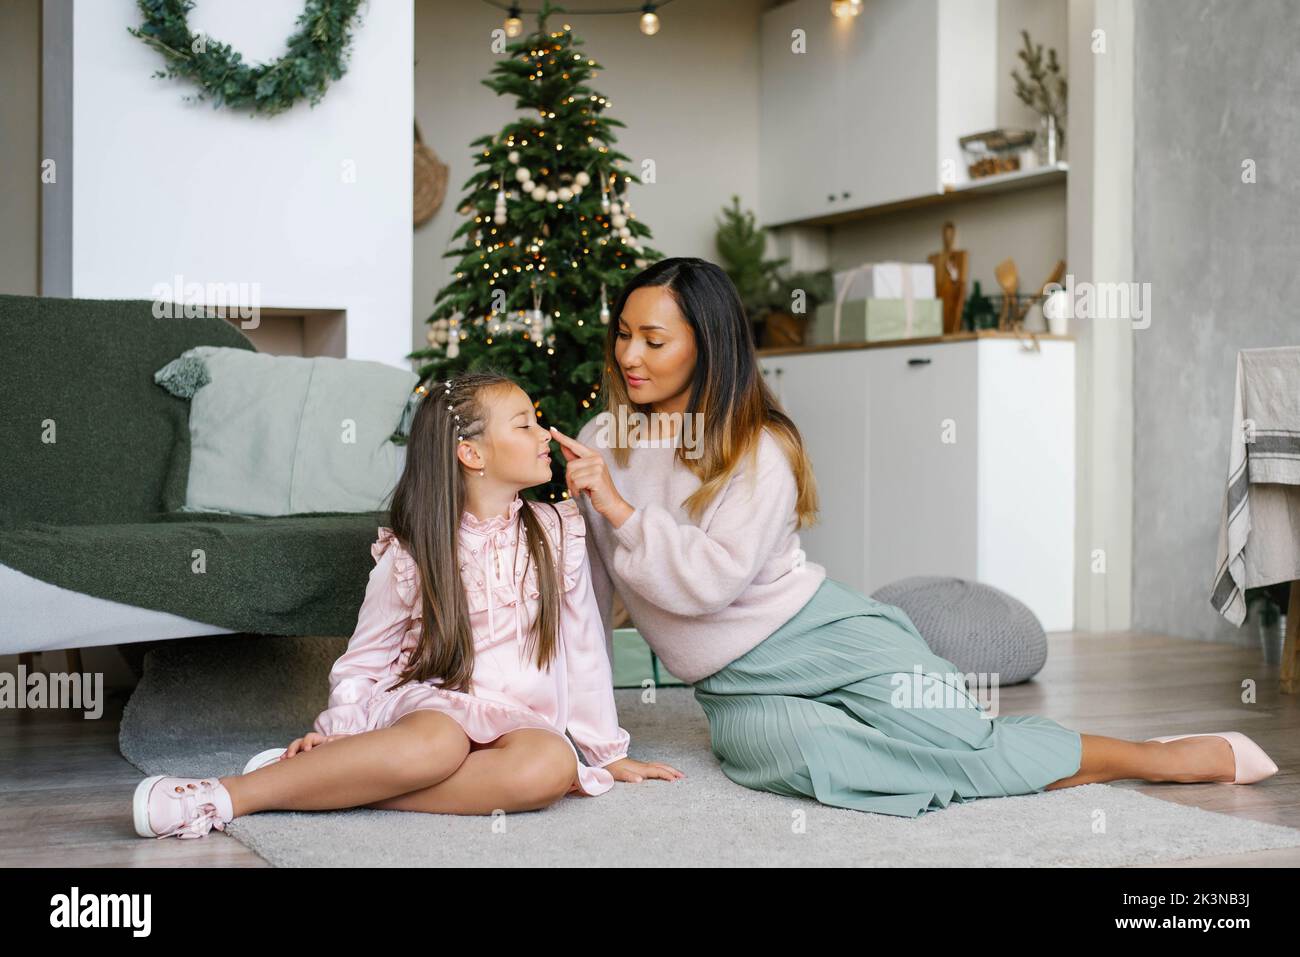 La madre toca la nariz de su hija con su dedo en la víspera de Navidad Foto de stock